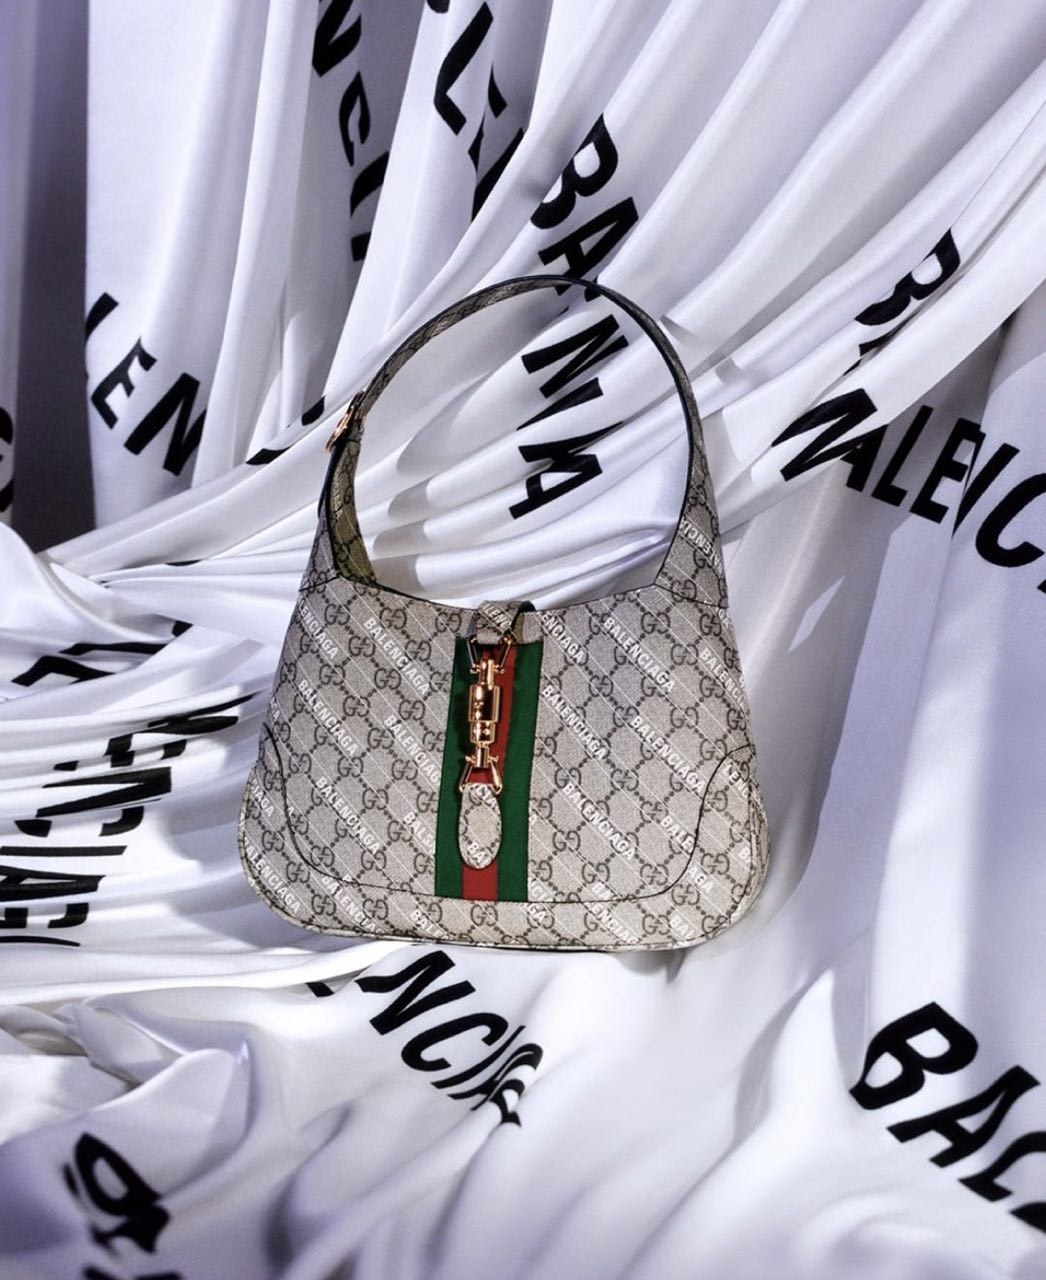 Balenciaga x Gucci Clothing, Accessories, Bags